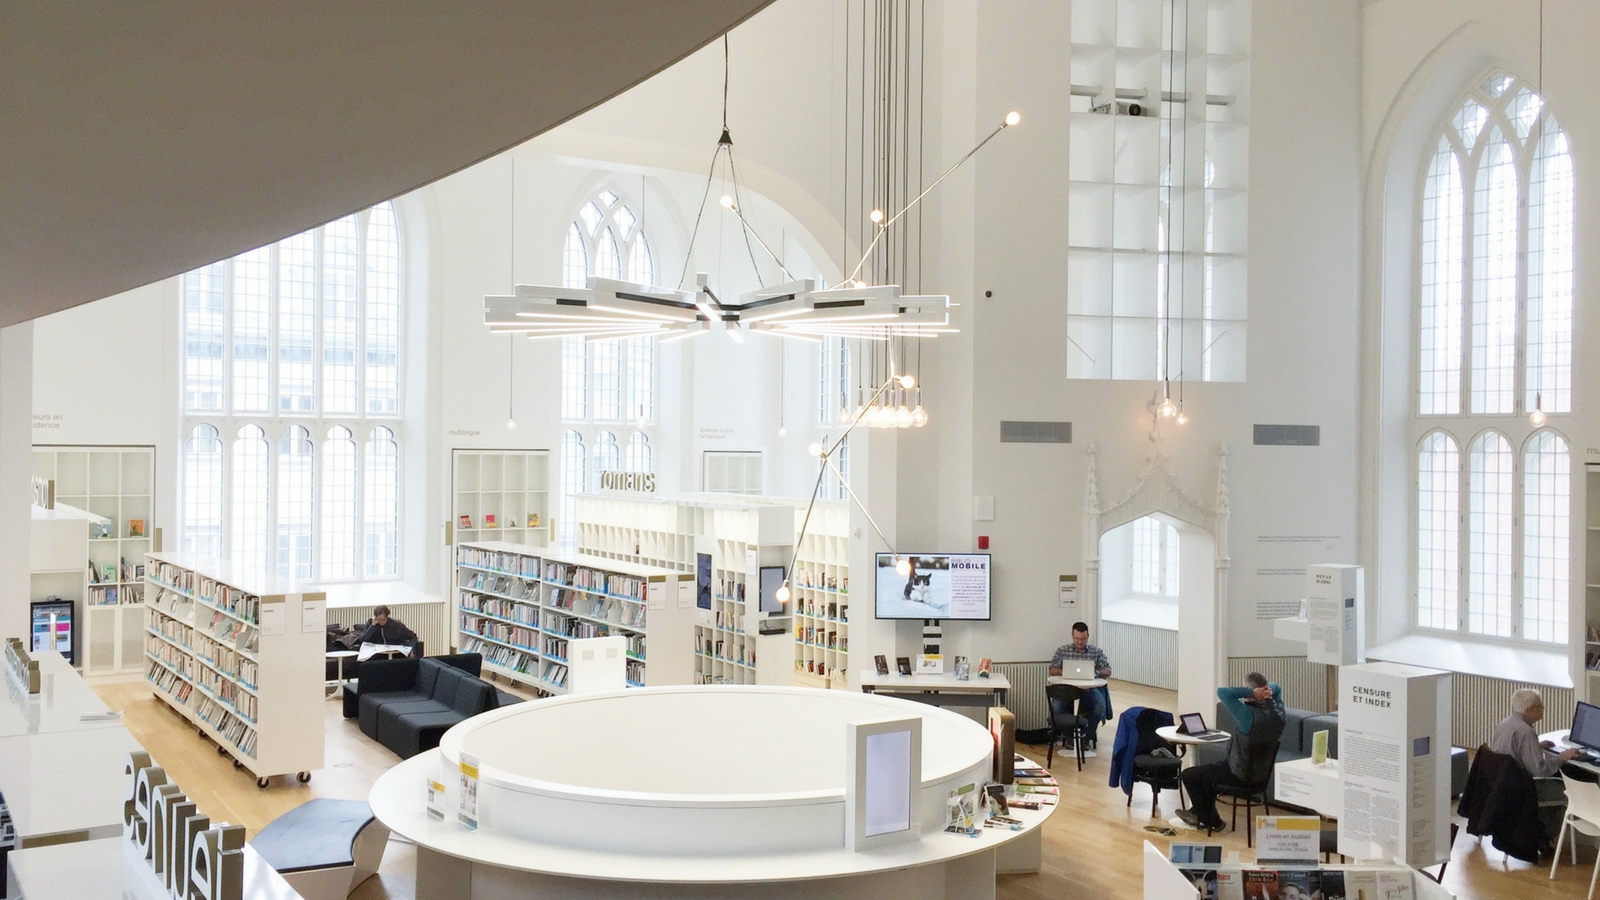 Maison de la littérature is more than a pretty library!